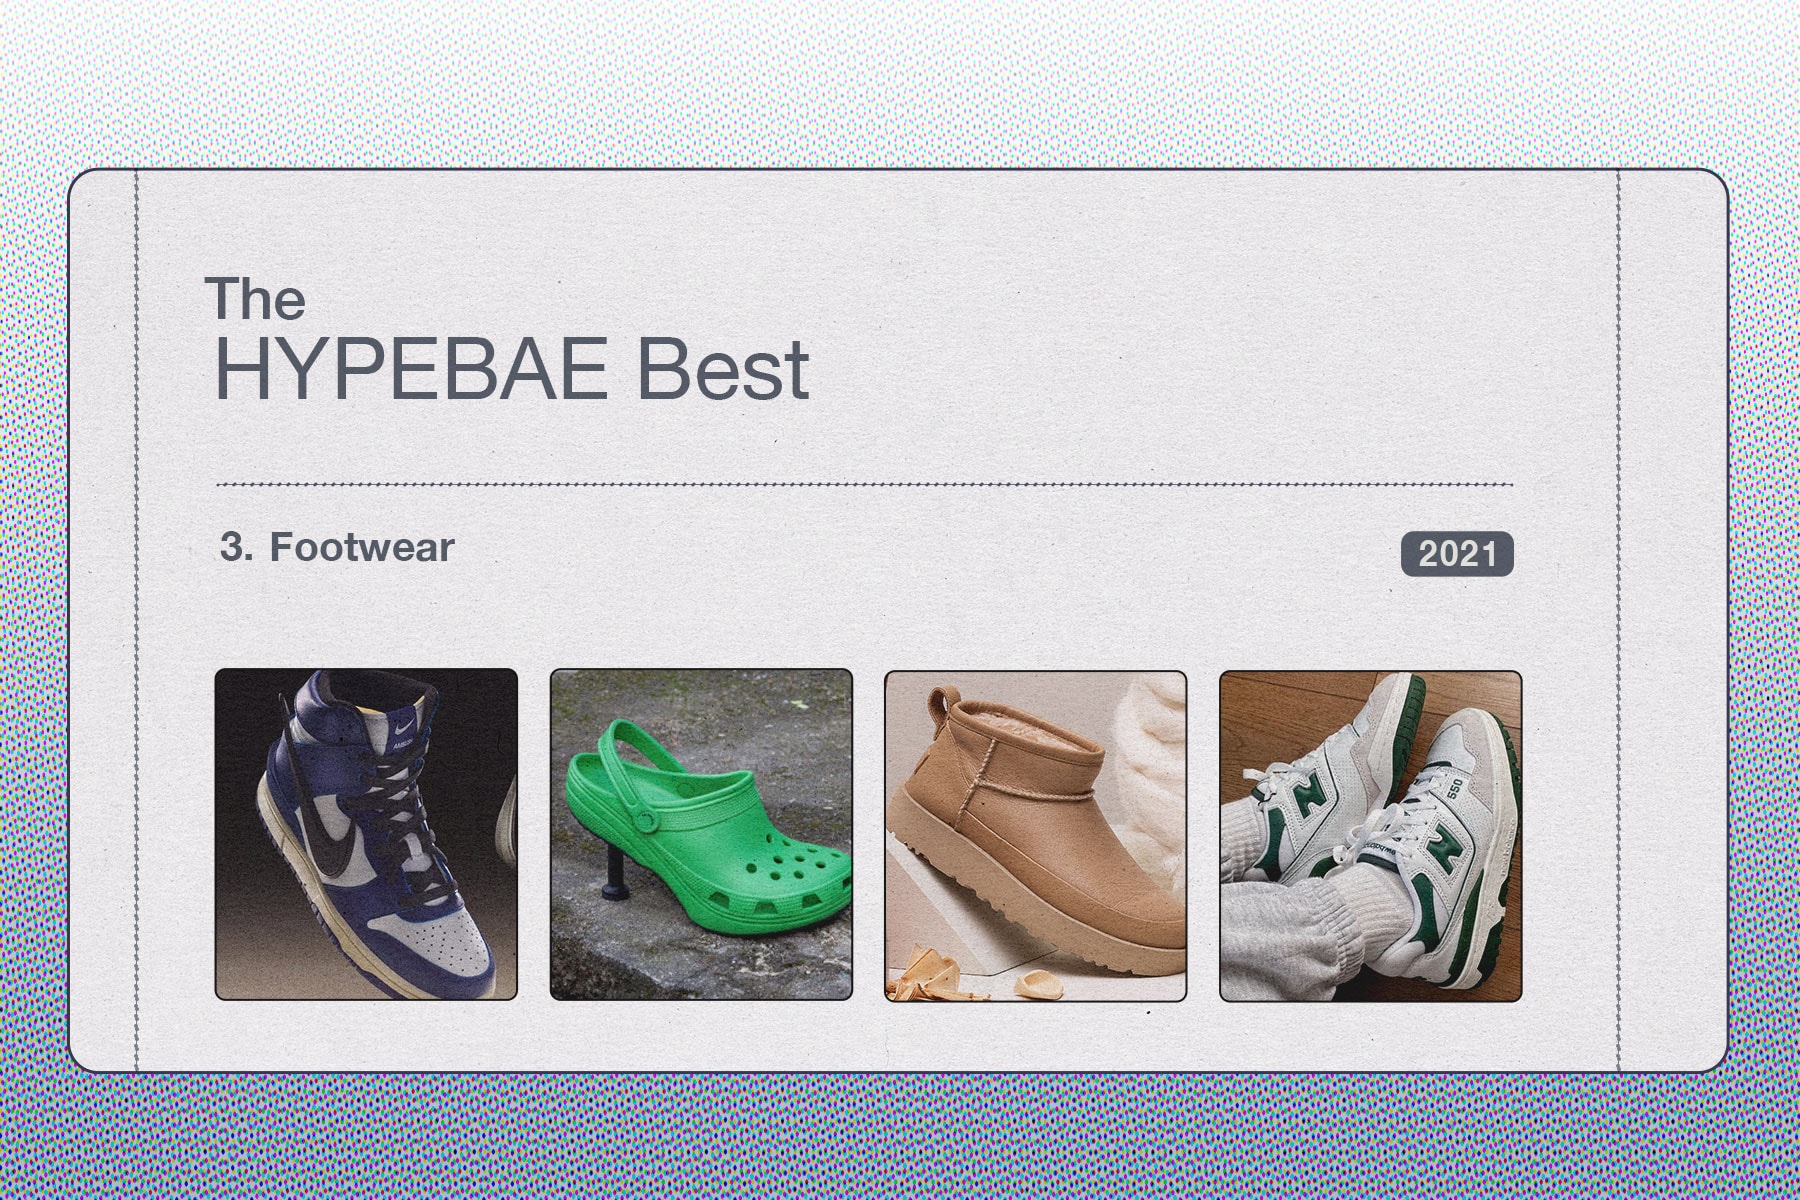 HYPEBAE Best 2021 Footwear Sneakers SHoes